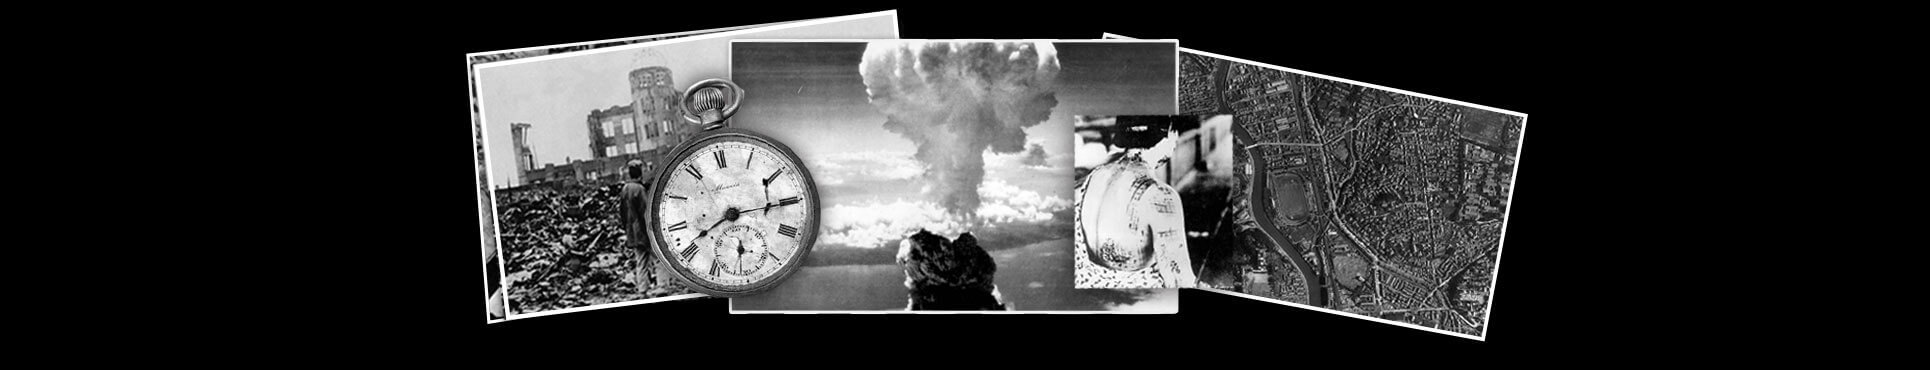 Montagem de fotos de explosão da bomba, devastação, mapa de Hiroshima, relógio com a hora da bomba, mulher ferida